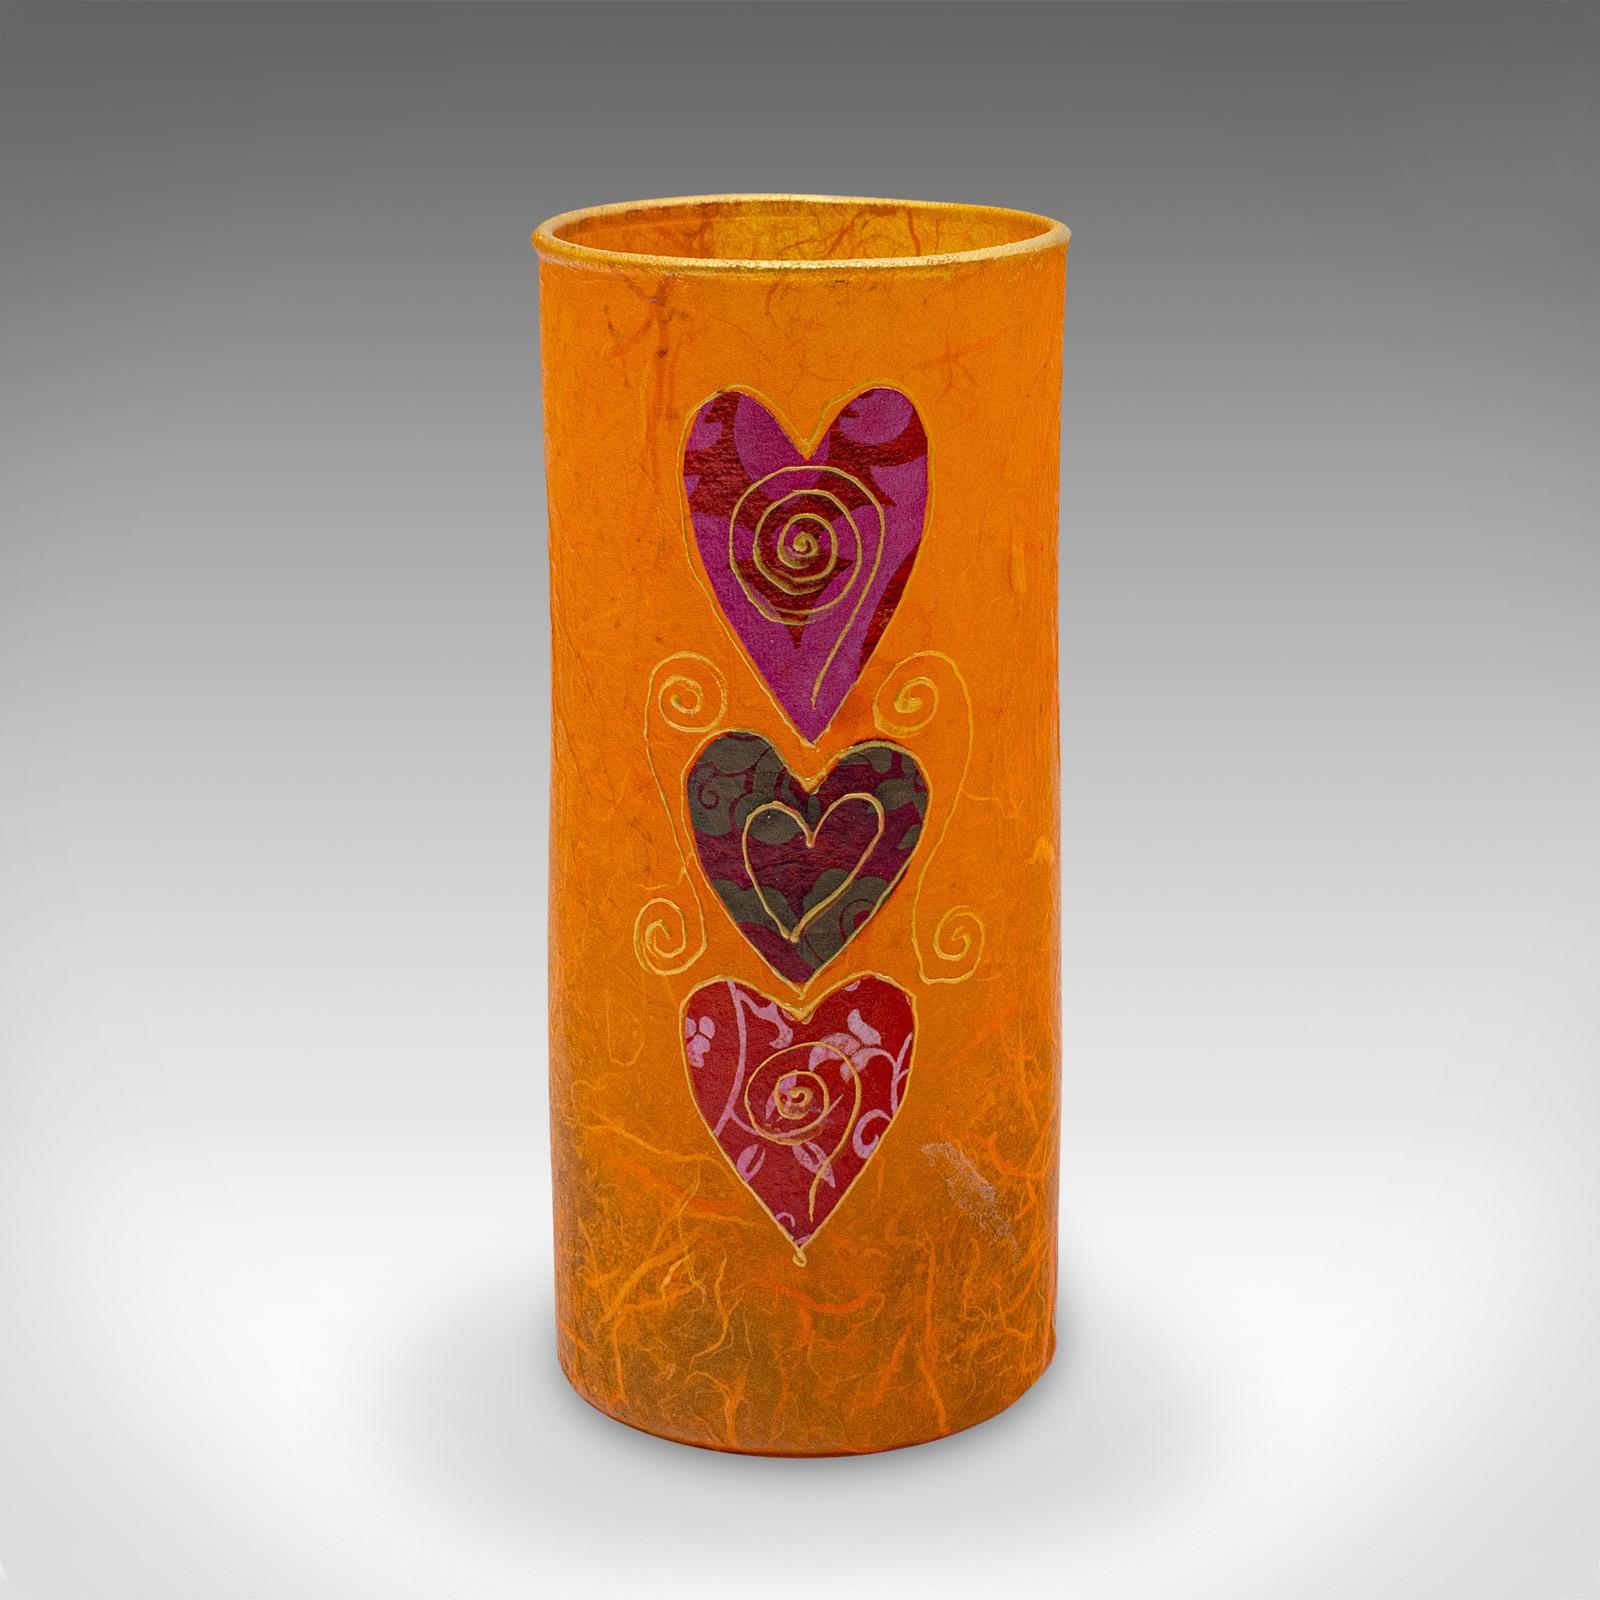 Dies ist eine kleine zeitgenössische dekorative Vase. Eine englische, strohseidene Kunstglasblumenhülle von Margaret Johnson.

Ungewöhnliche und interessante Technik gepaart mit tollen Farben
Ein begehrenswertes, zeitgemäßes Erscheinungsbild und ein